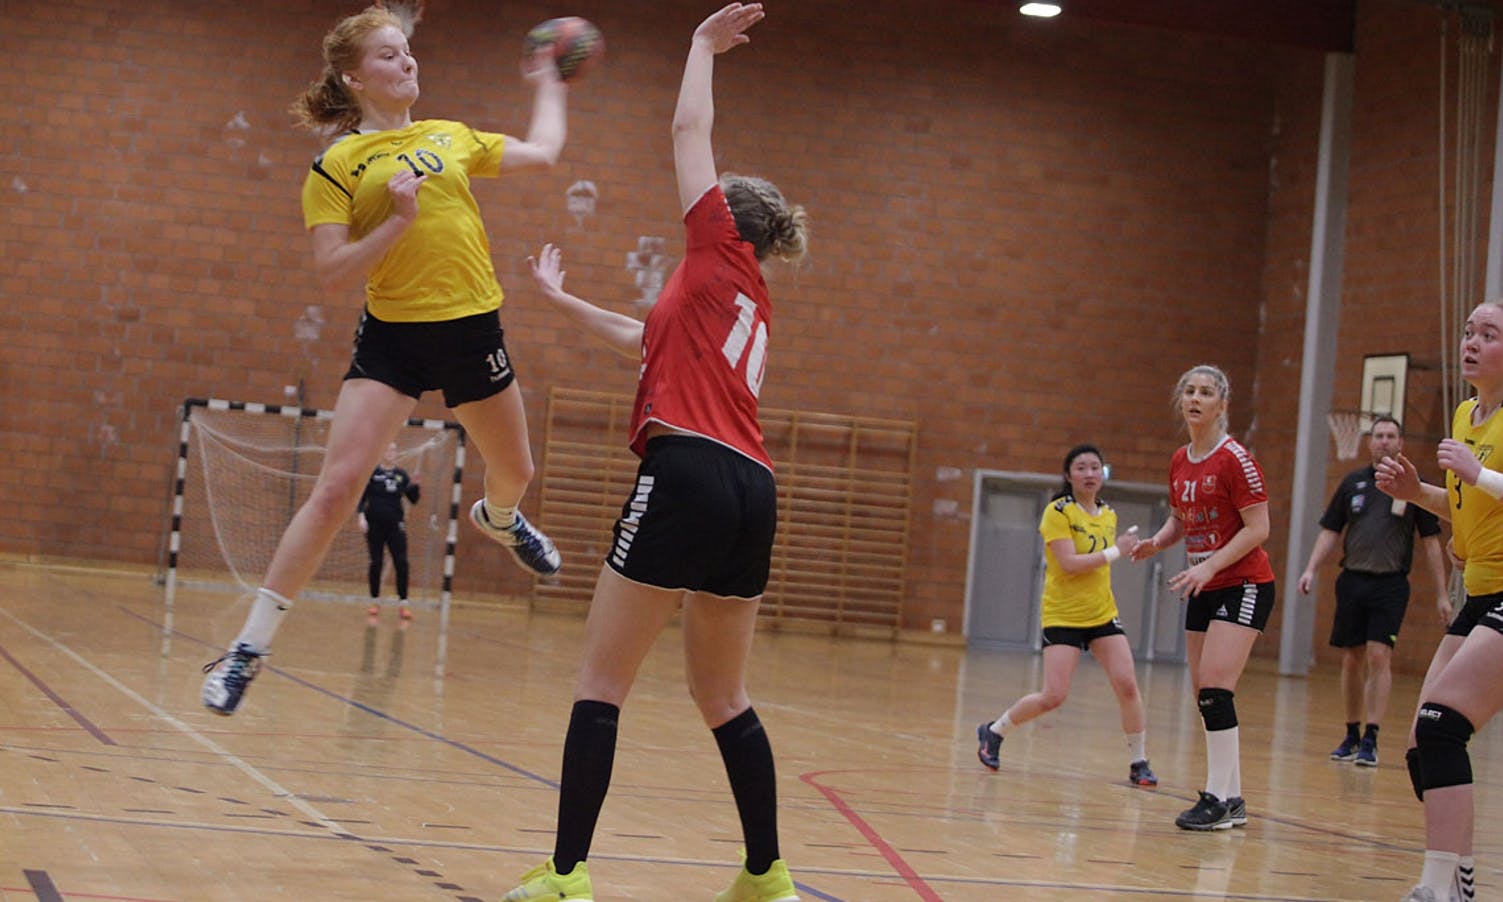 Anna Mjånes skåra 6 mål. (Foto: KVB)